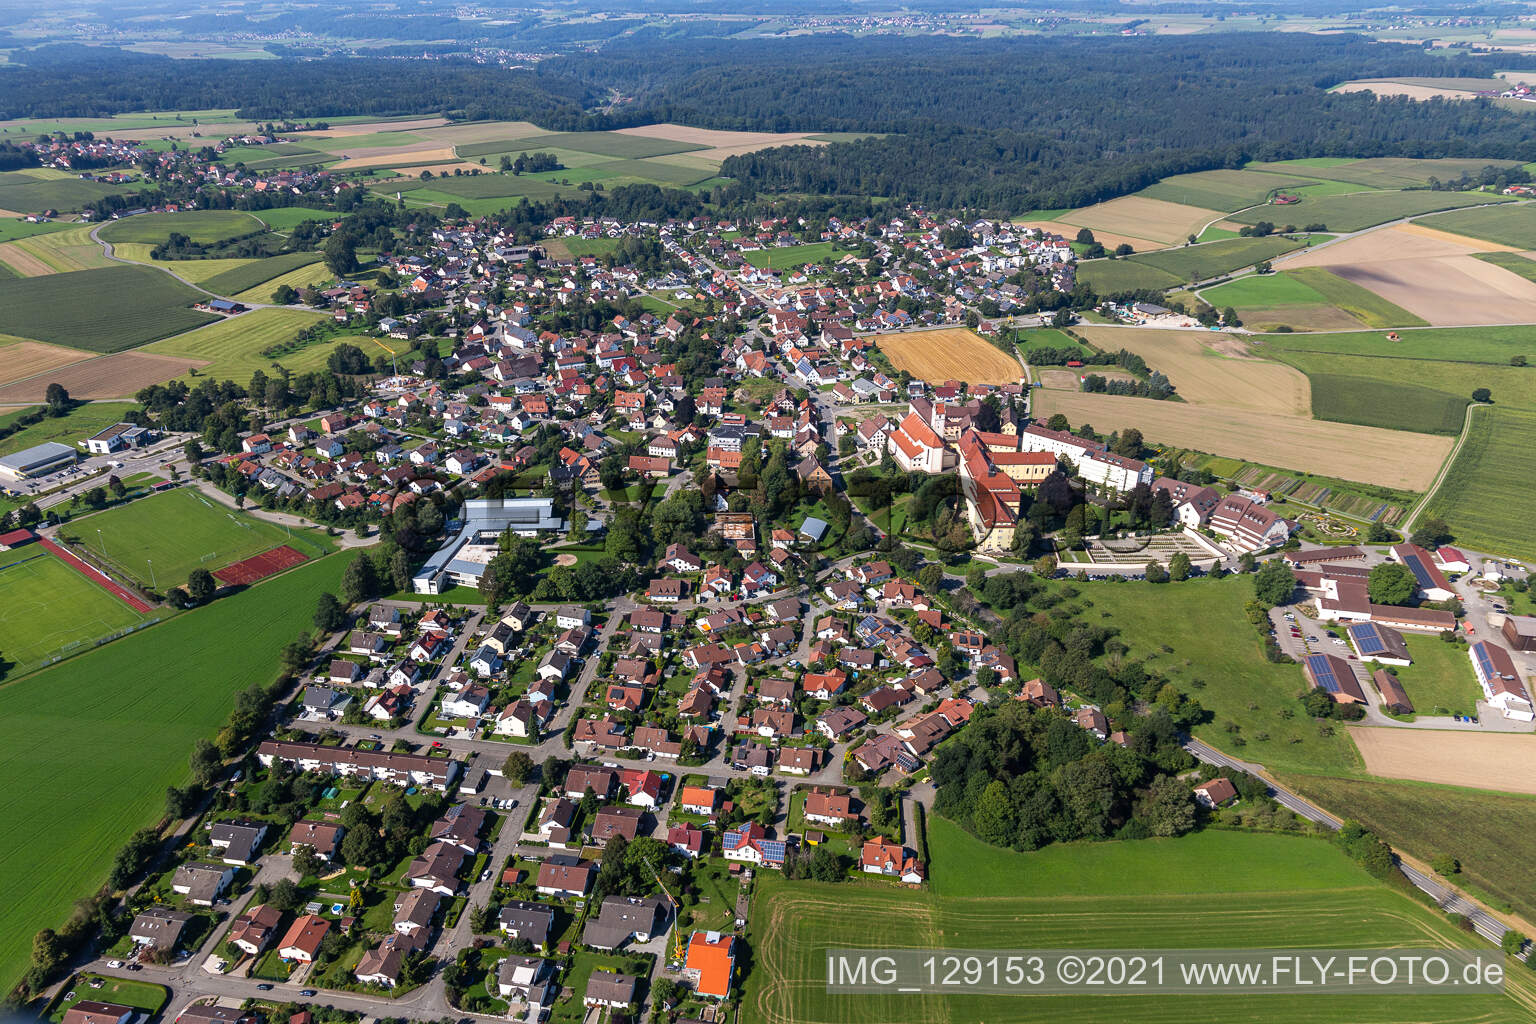 Vue aérienne de Quartier Reute in Bad Waldsee dans le département Bade-Wurtemberg, Allemagne